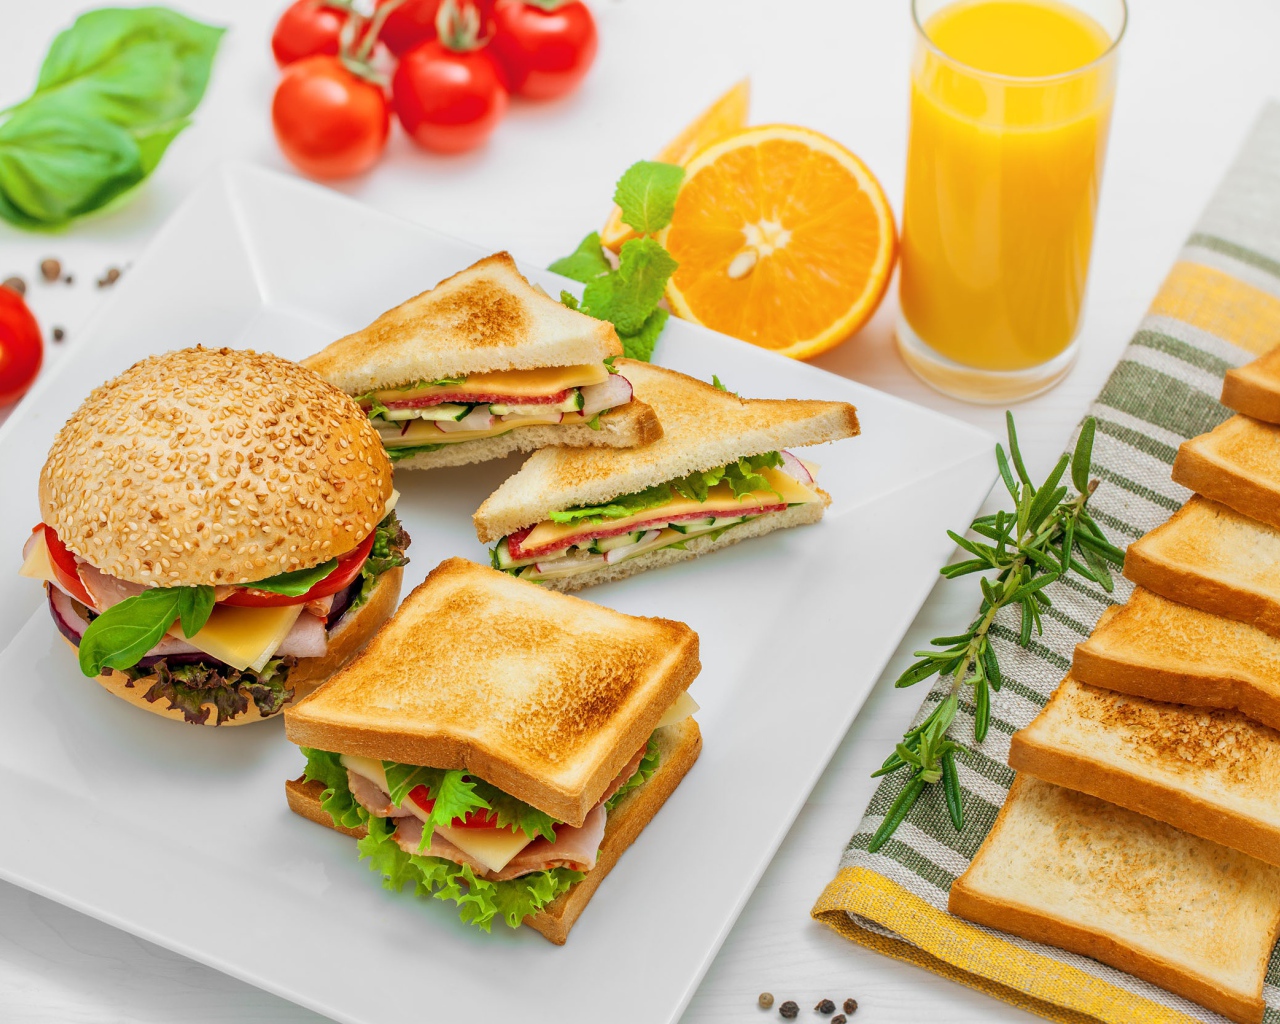 Гамбургер и сендвичи на столе с апельсиновым соком